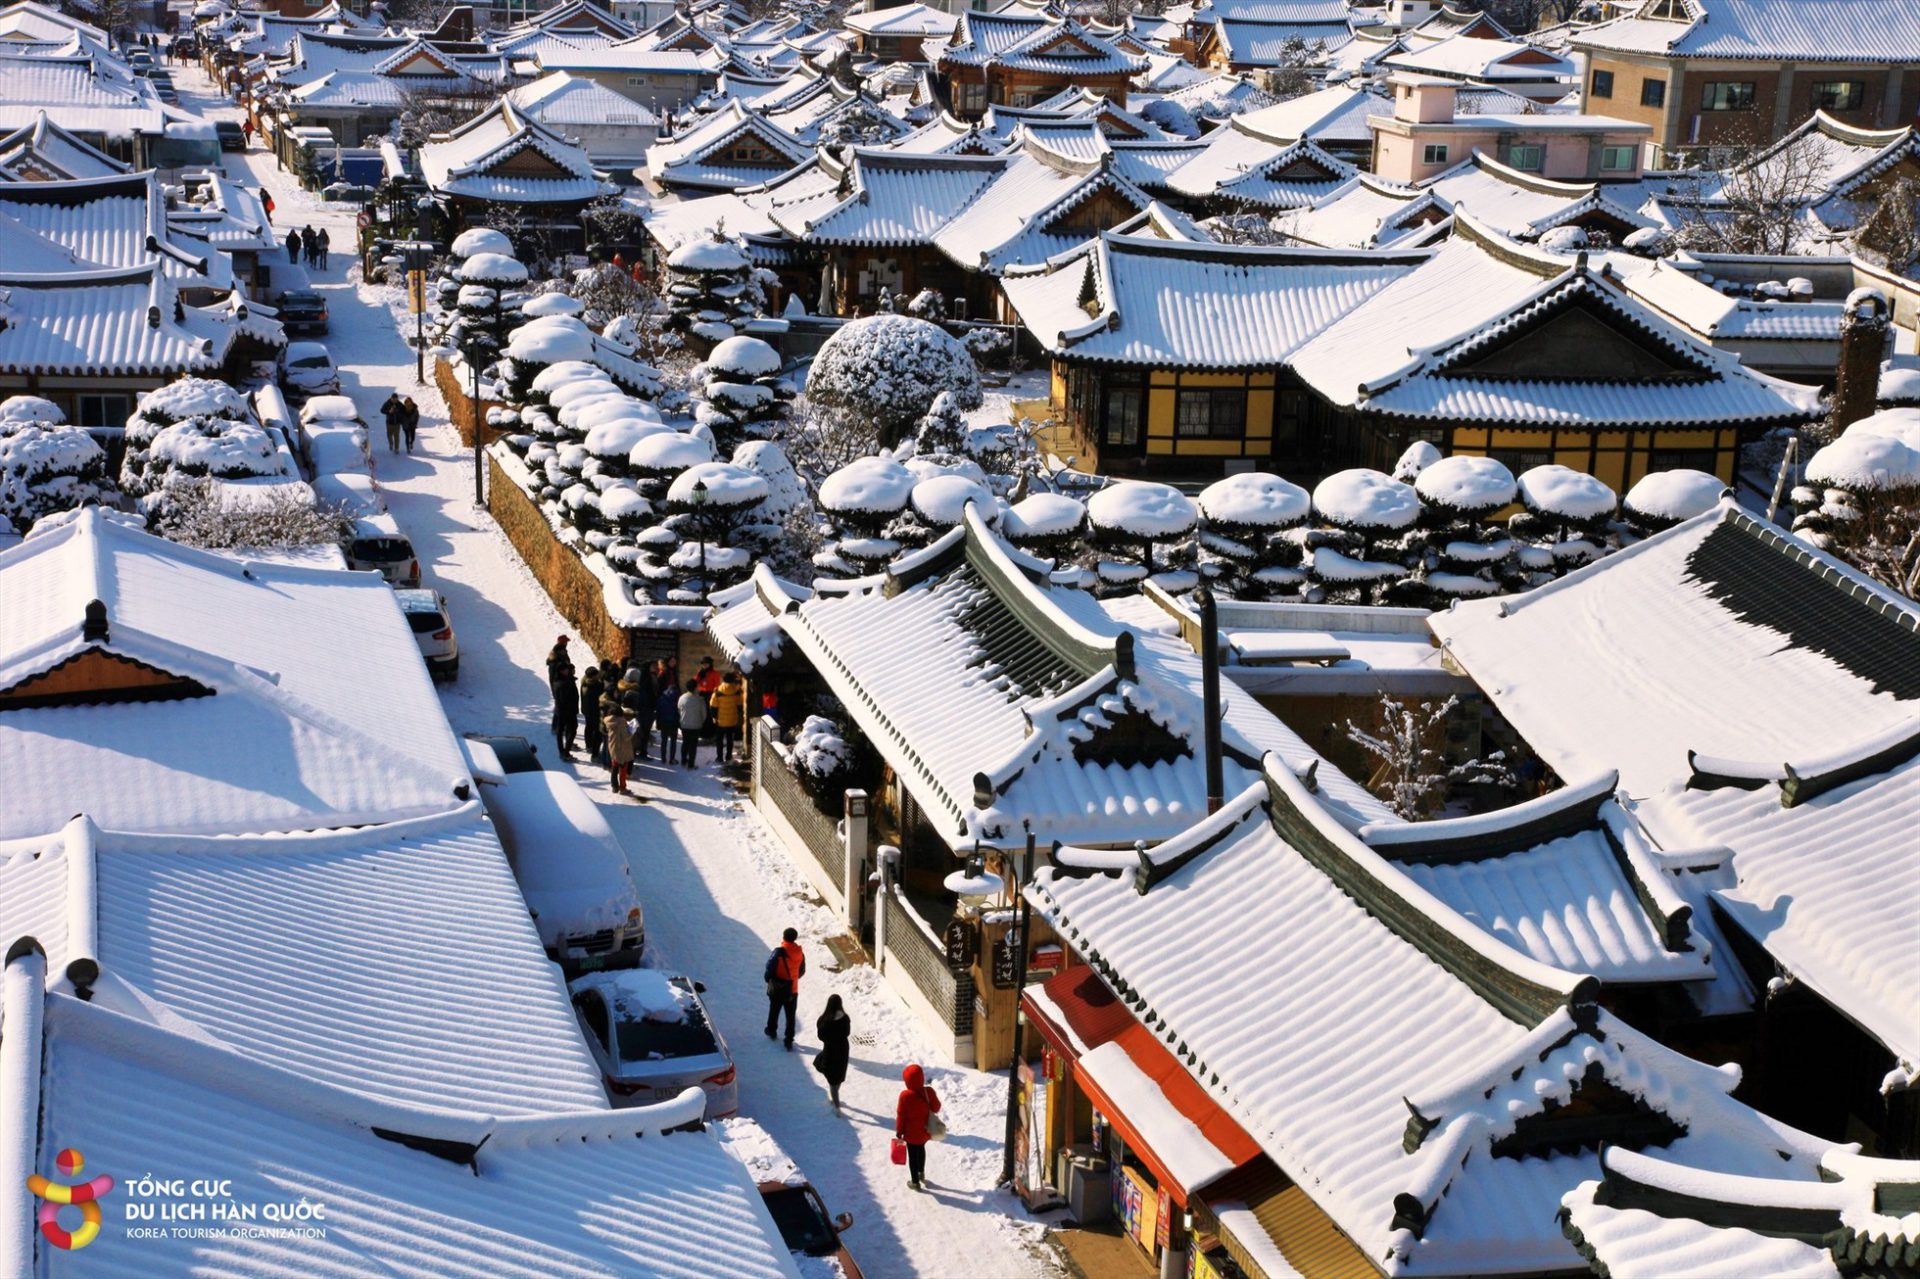 Mùa đông ở Hàn Quốc thường kéo dài từ tháng 12 đến tháng 3 năm sau. Đây cũng là thời điểm Hàn Quốc đón nhiều du khách tới tham quan, tận hưởng không khí giá lạnh và chiêm ngưỡng các thành phố chìm trong tuyết trắng.